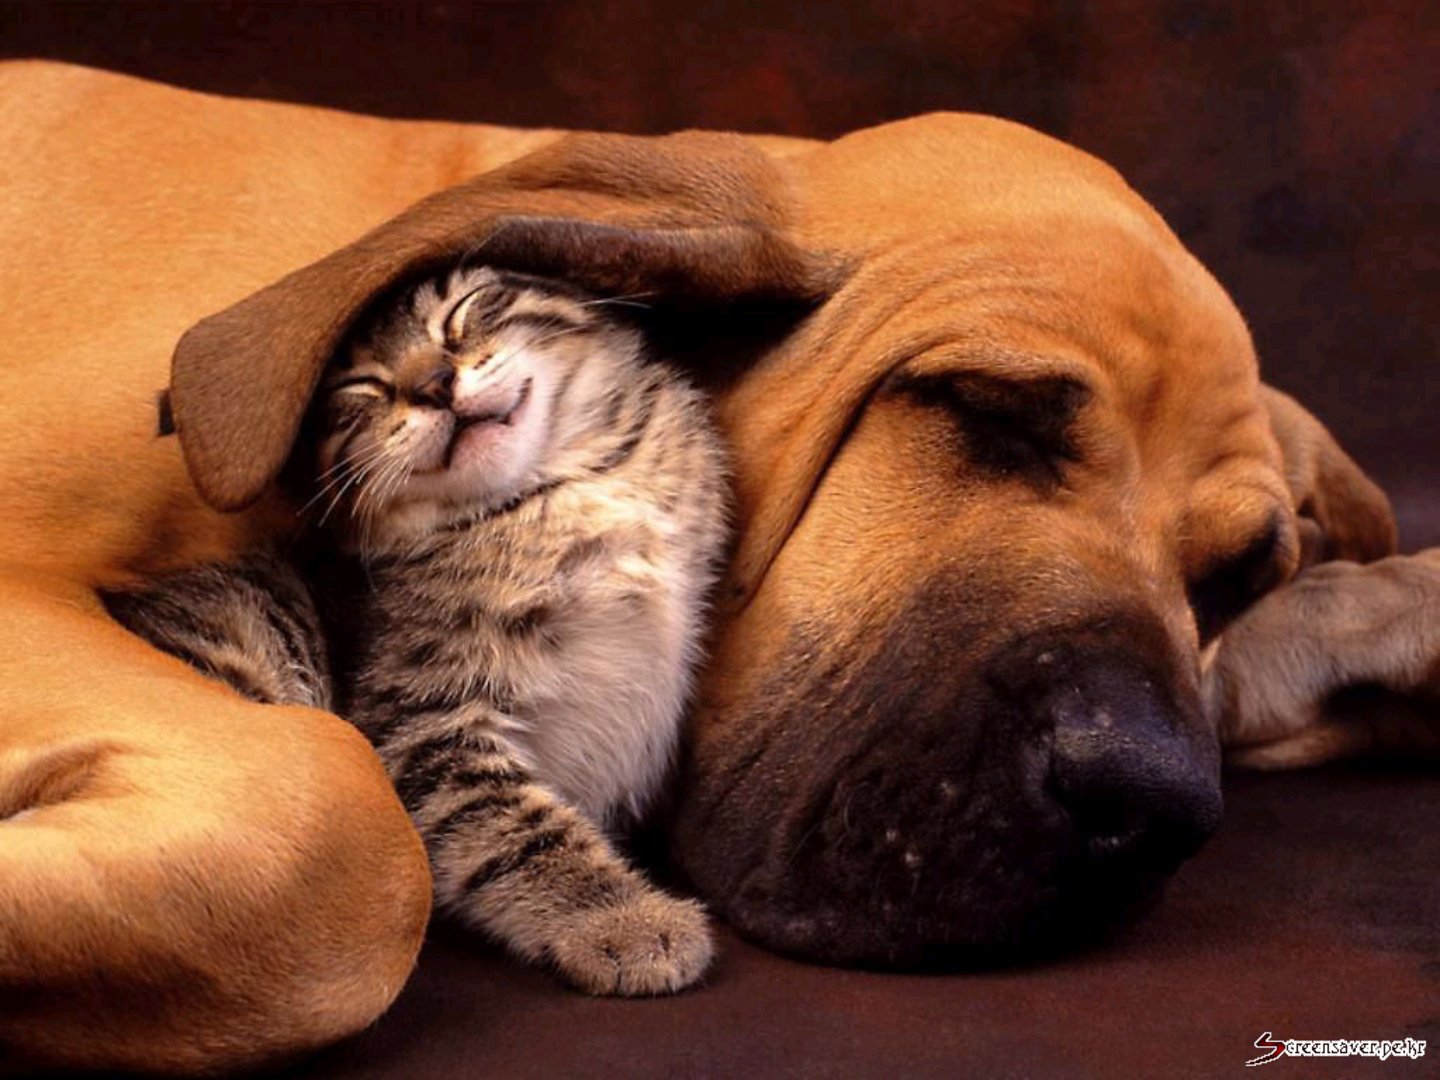 Hero Wallpaper dog and cat Wallpaper #Nokia #Wallpaper #Cats #Dog #Cat #Cute